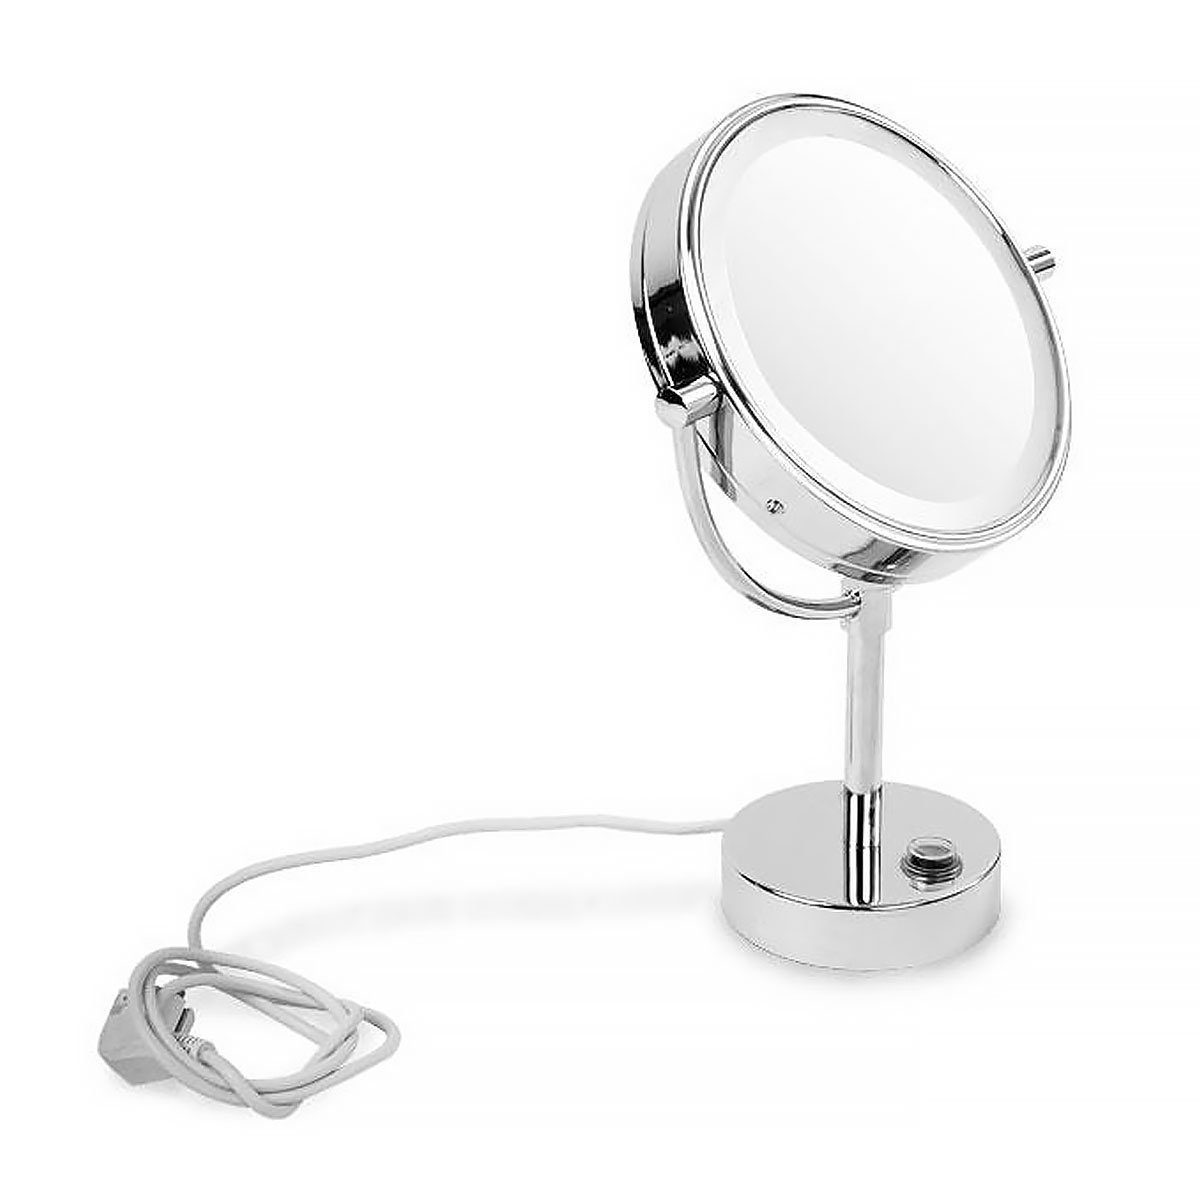 Kubus Vergrößerung, 5-fache LED-Lichtspiegel, Marilyn